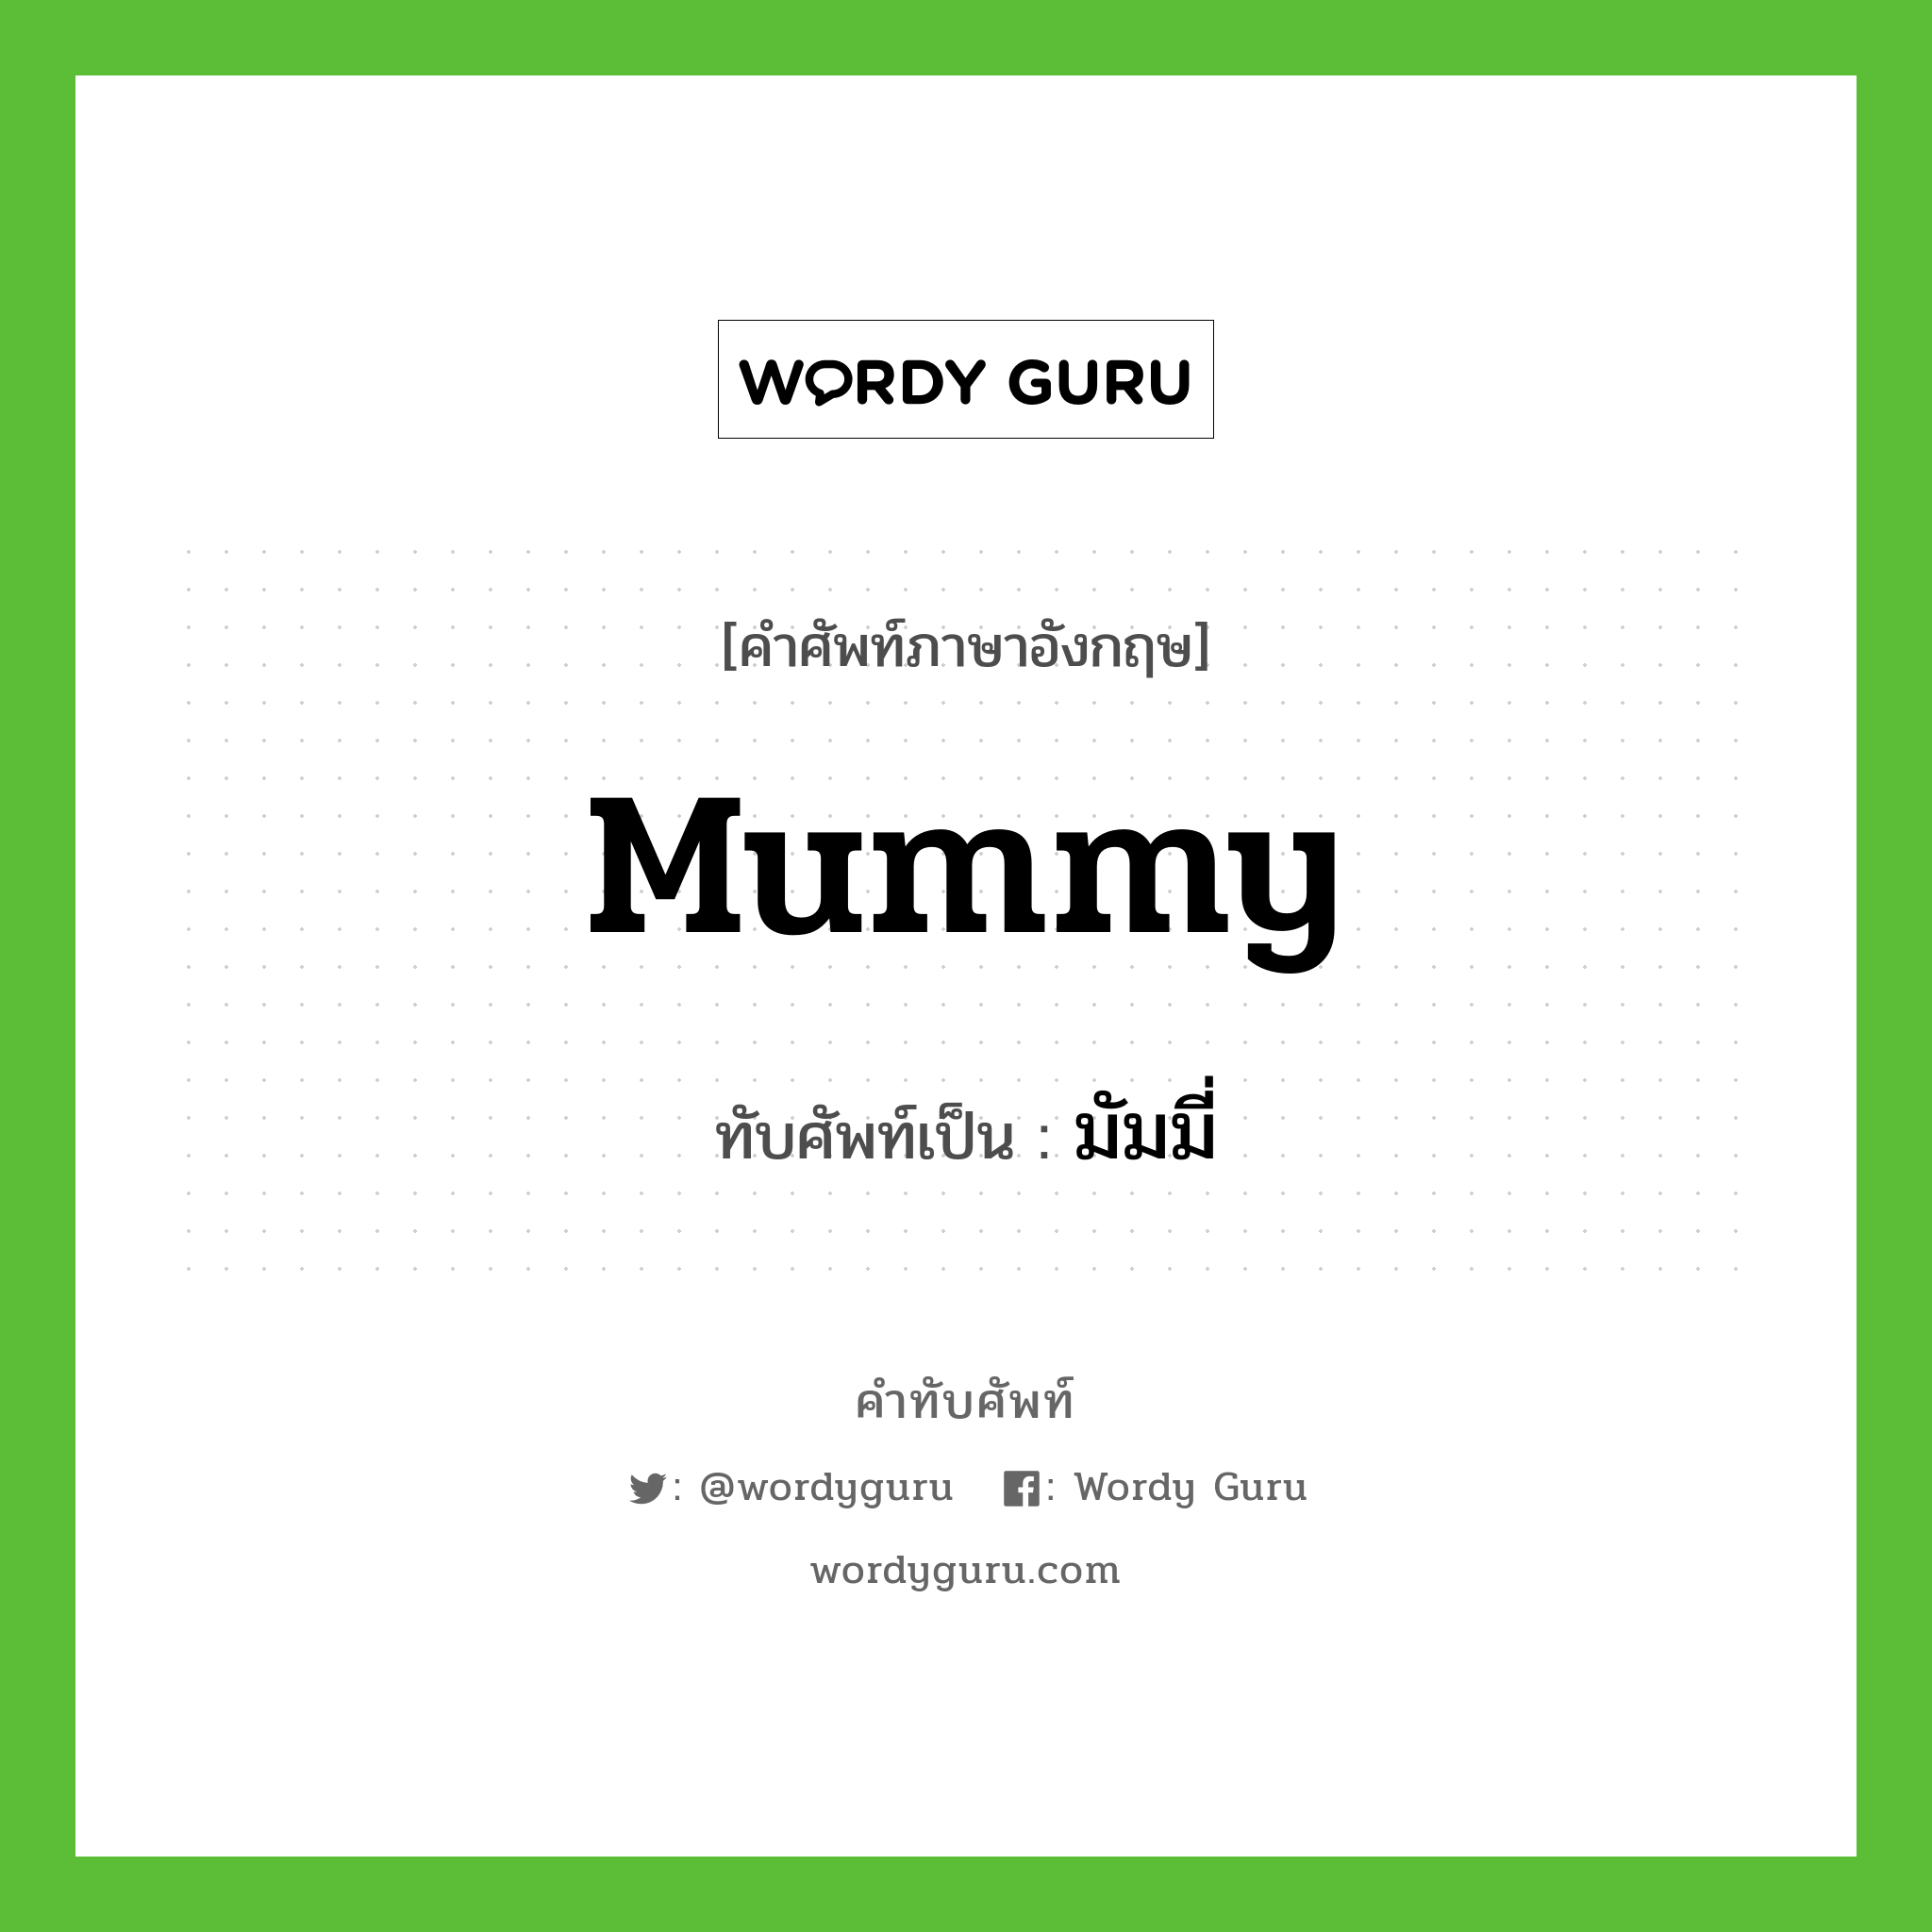 mummy เขียนเป็นคำไทยว่าอะไร?, คำศัพท์ภาษาอังกฤษ mummy ทับศัพท์เป็น มัมมี่